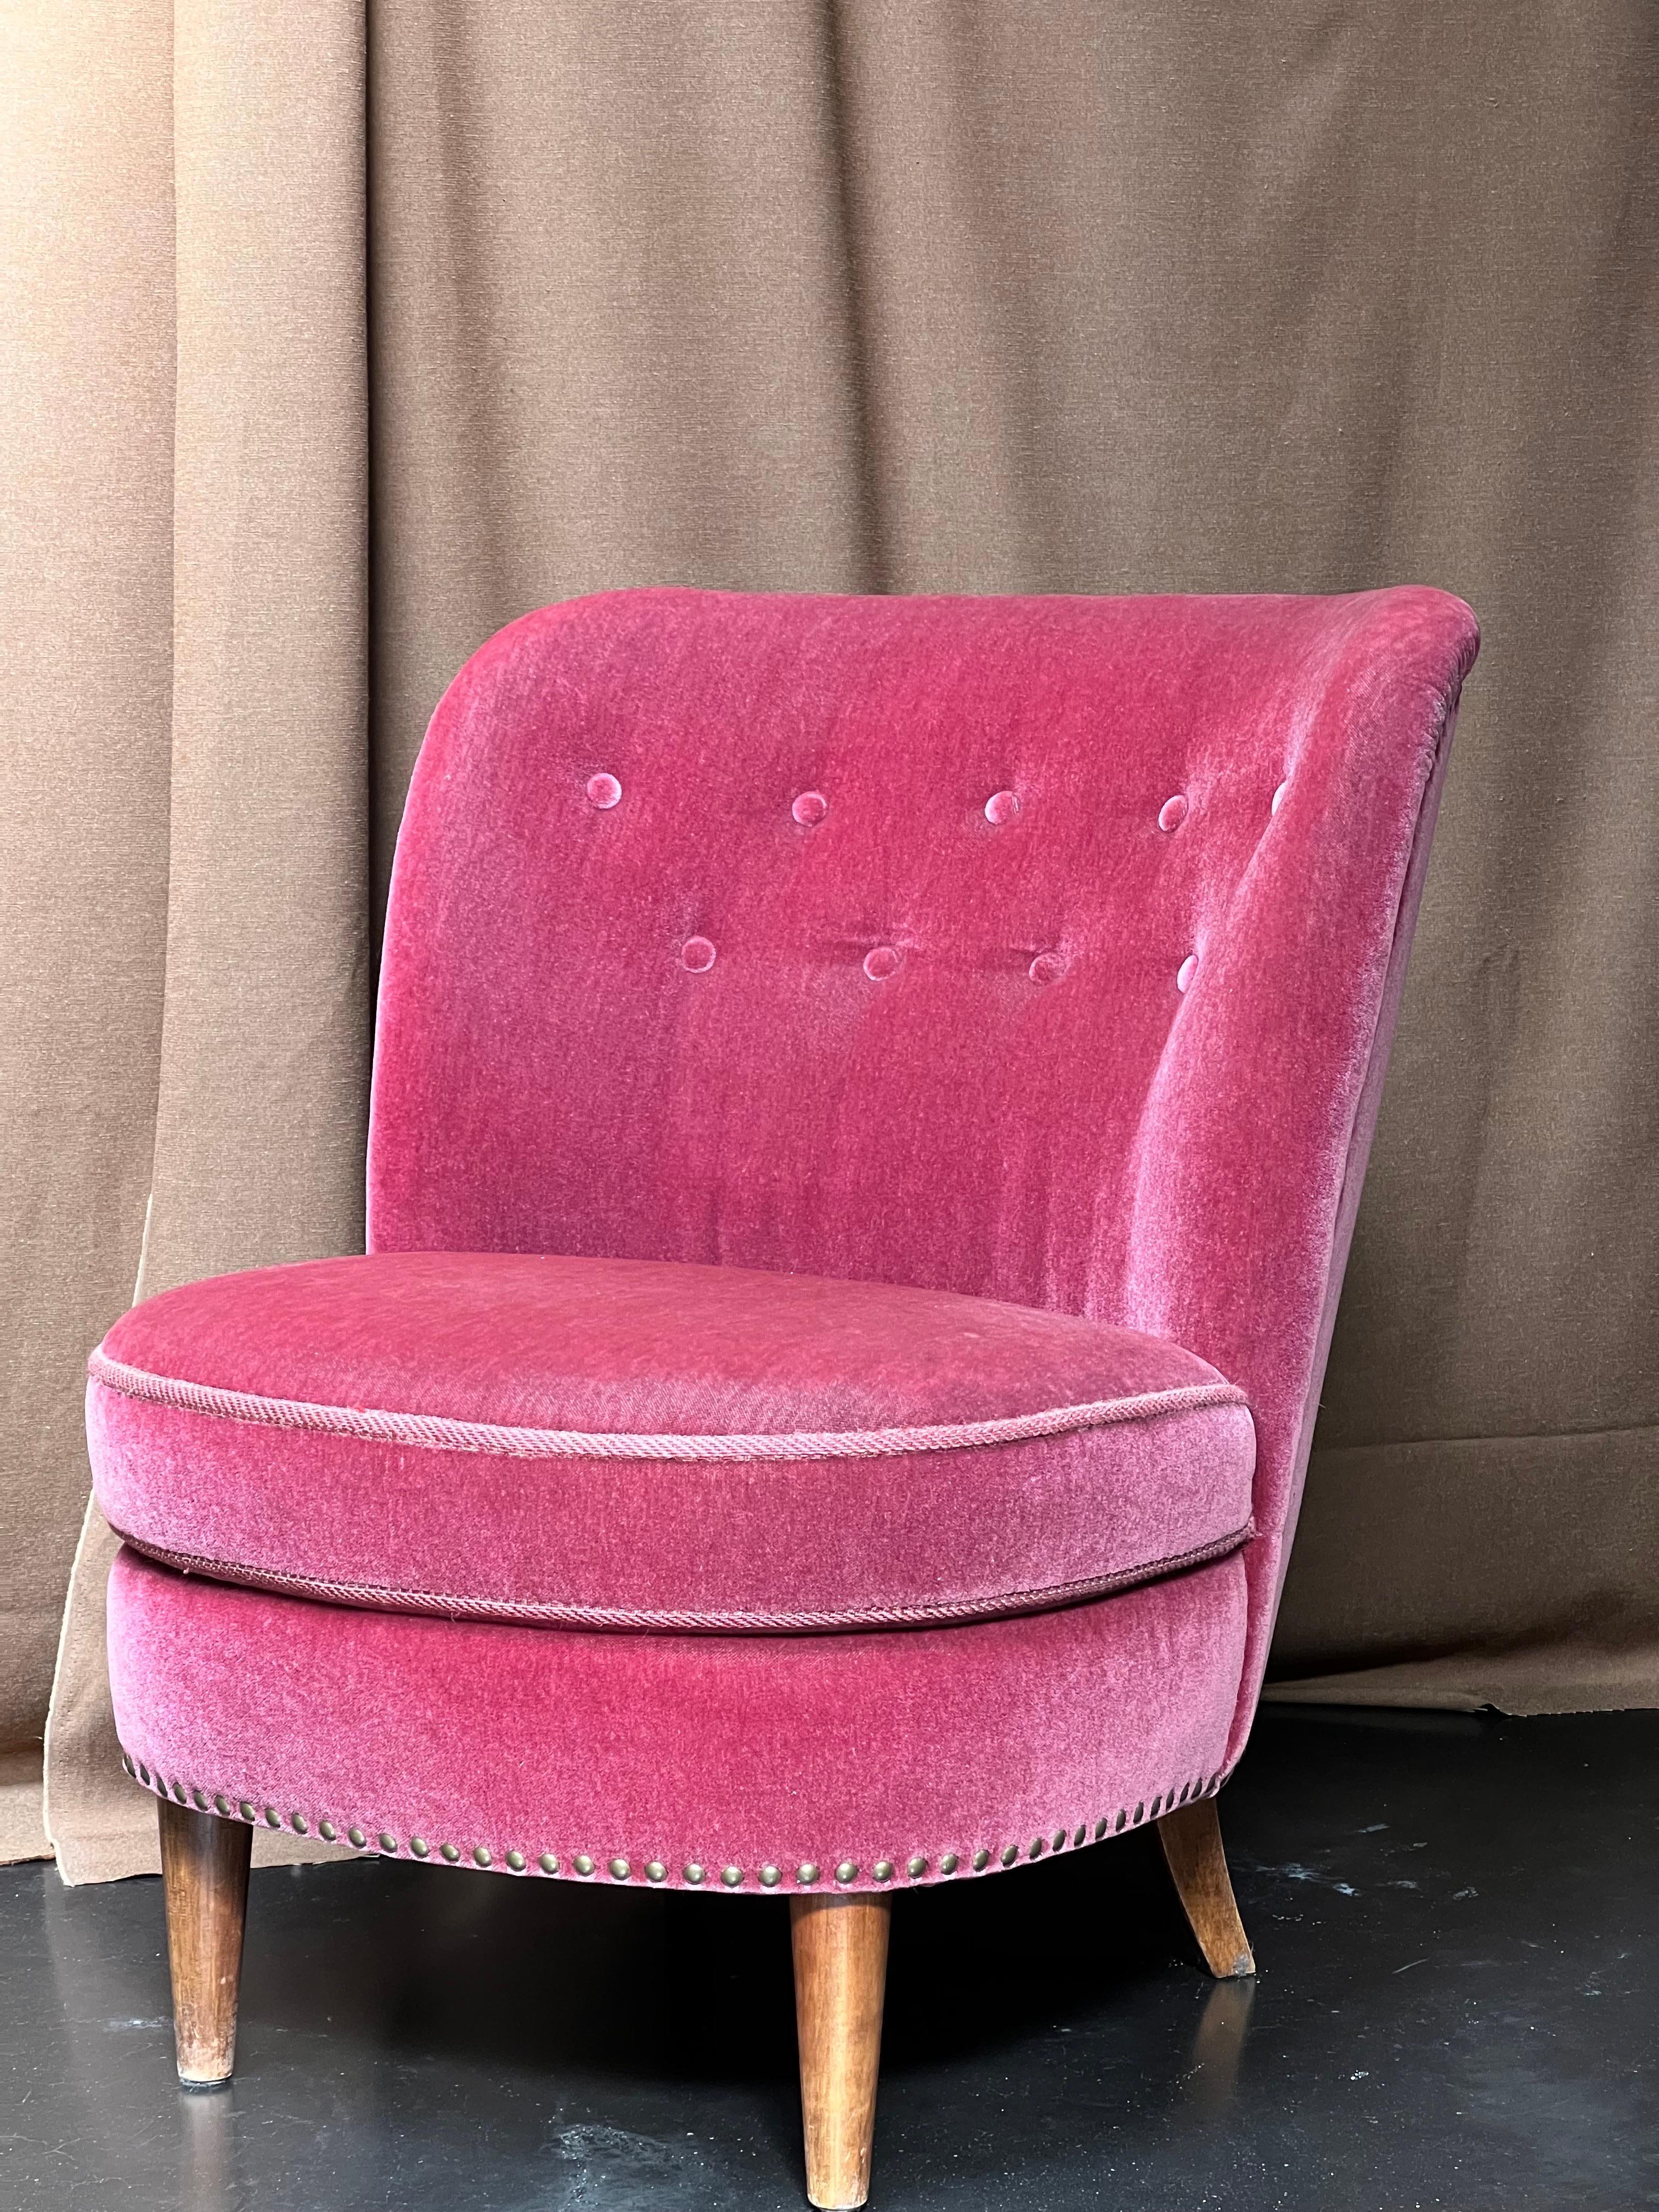 Eleganter rosafarbener Mohair-Einzel-Sessel aus den 1930er Jahren im schwedischen Grace-Stil. Es ist die schwedische Art-Déco-Bewegung. Mit Messingnägeln auf die Rückenlehne genagelt. Die Füße sind aus hellem Material gefertigt  Hartholz.